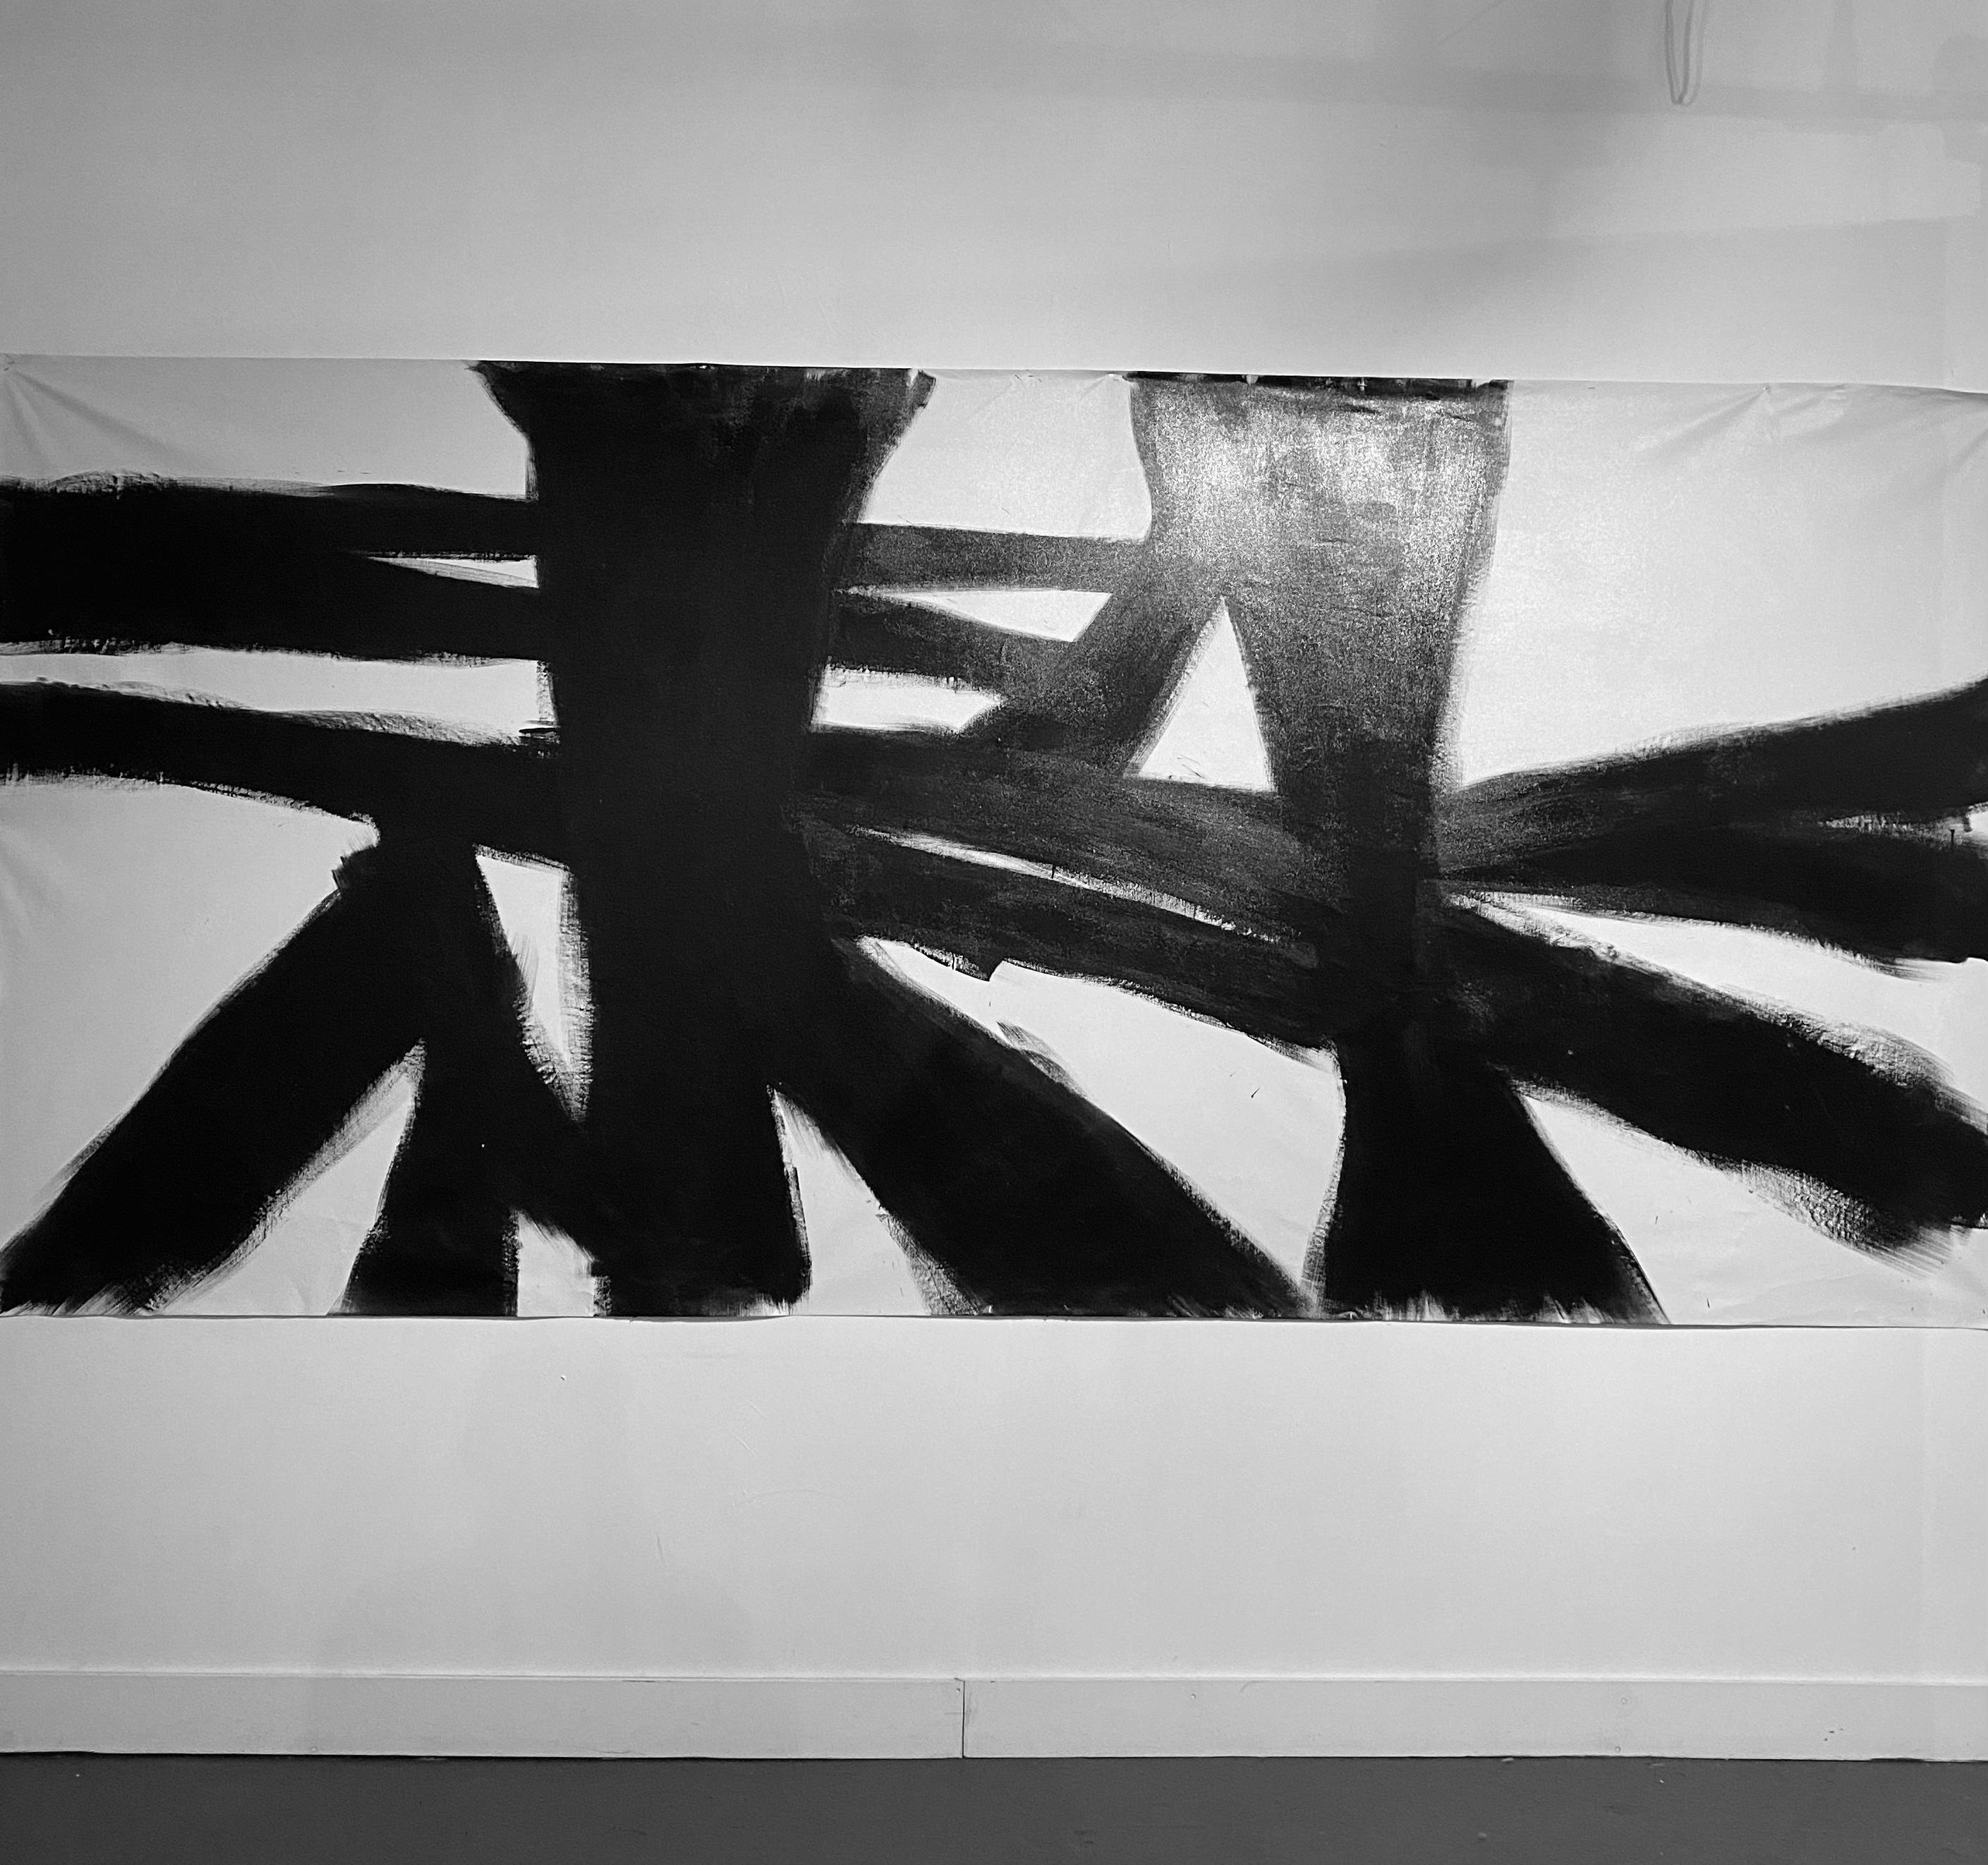 Abstract B1 - Black Abstract Painting by Carlos Mercado